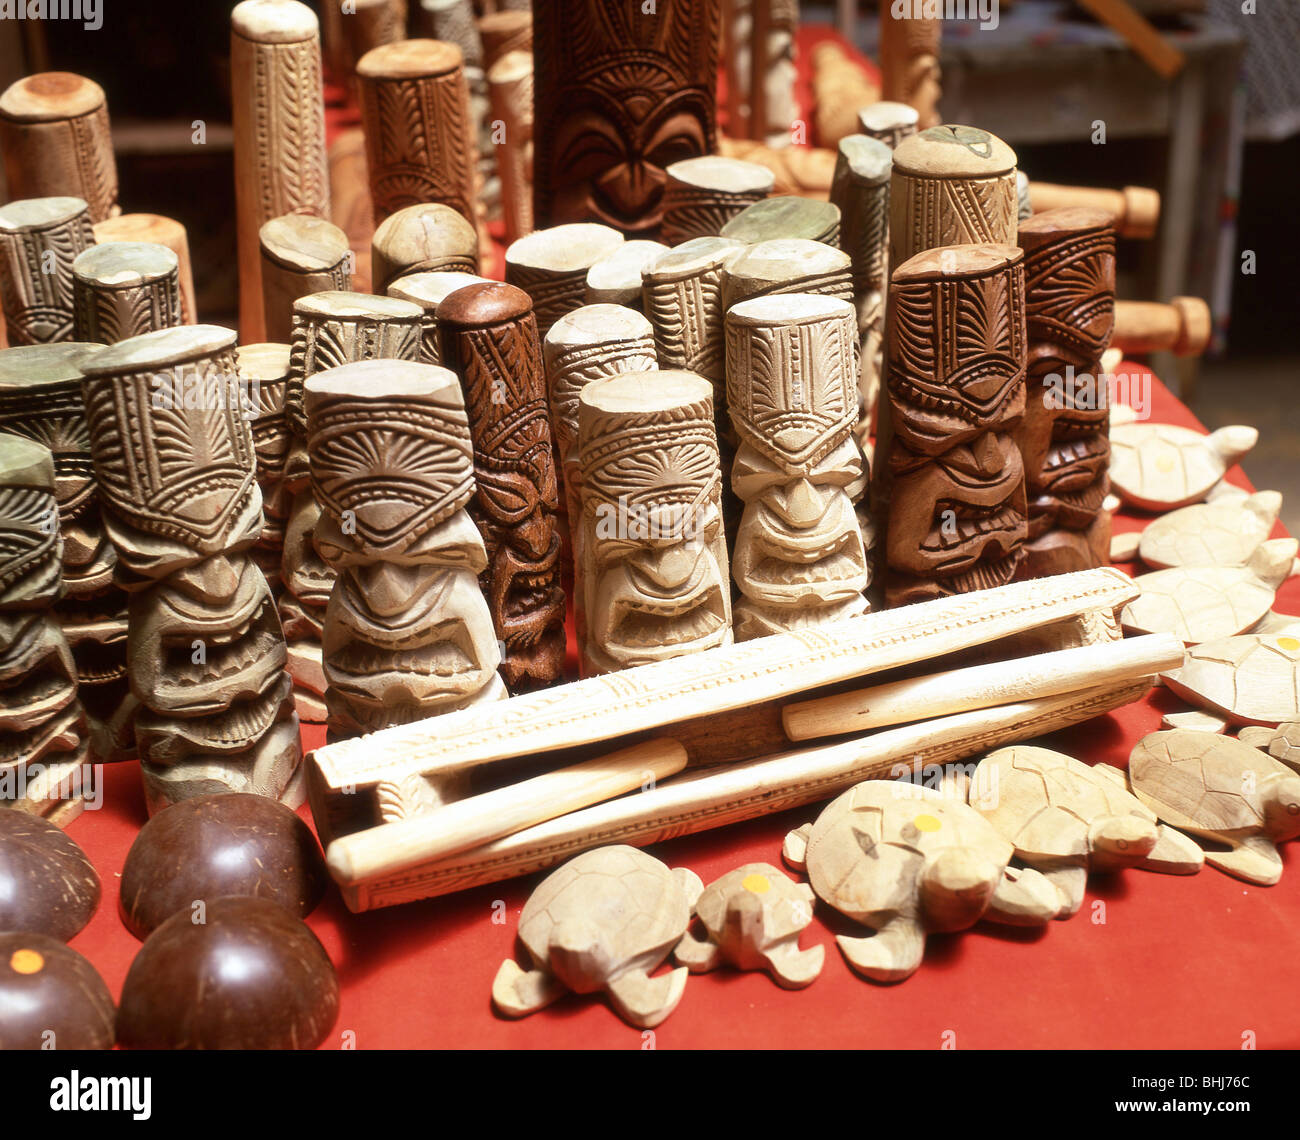 Sculpture en bois de souvenirs en Talamahu, Marché, Nuku'alofa, Tonga Tongatapu Banque D'Images